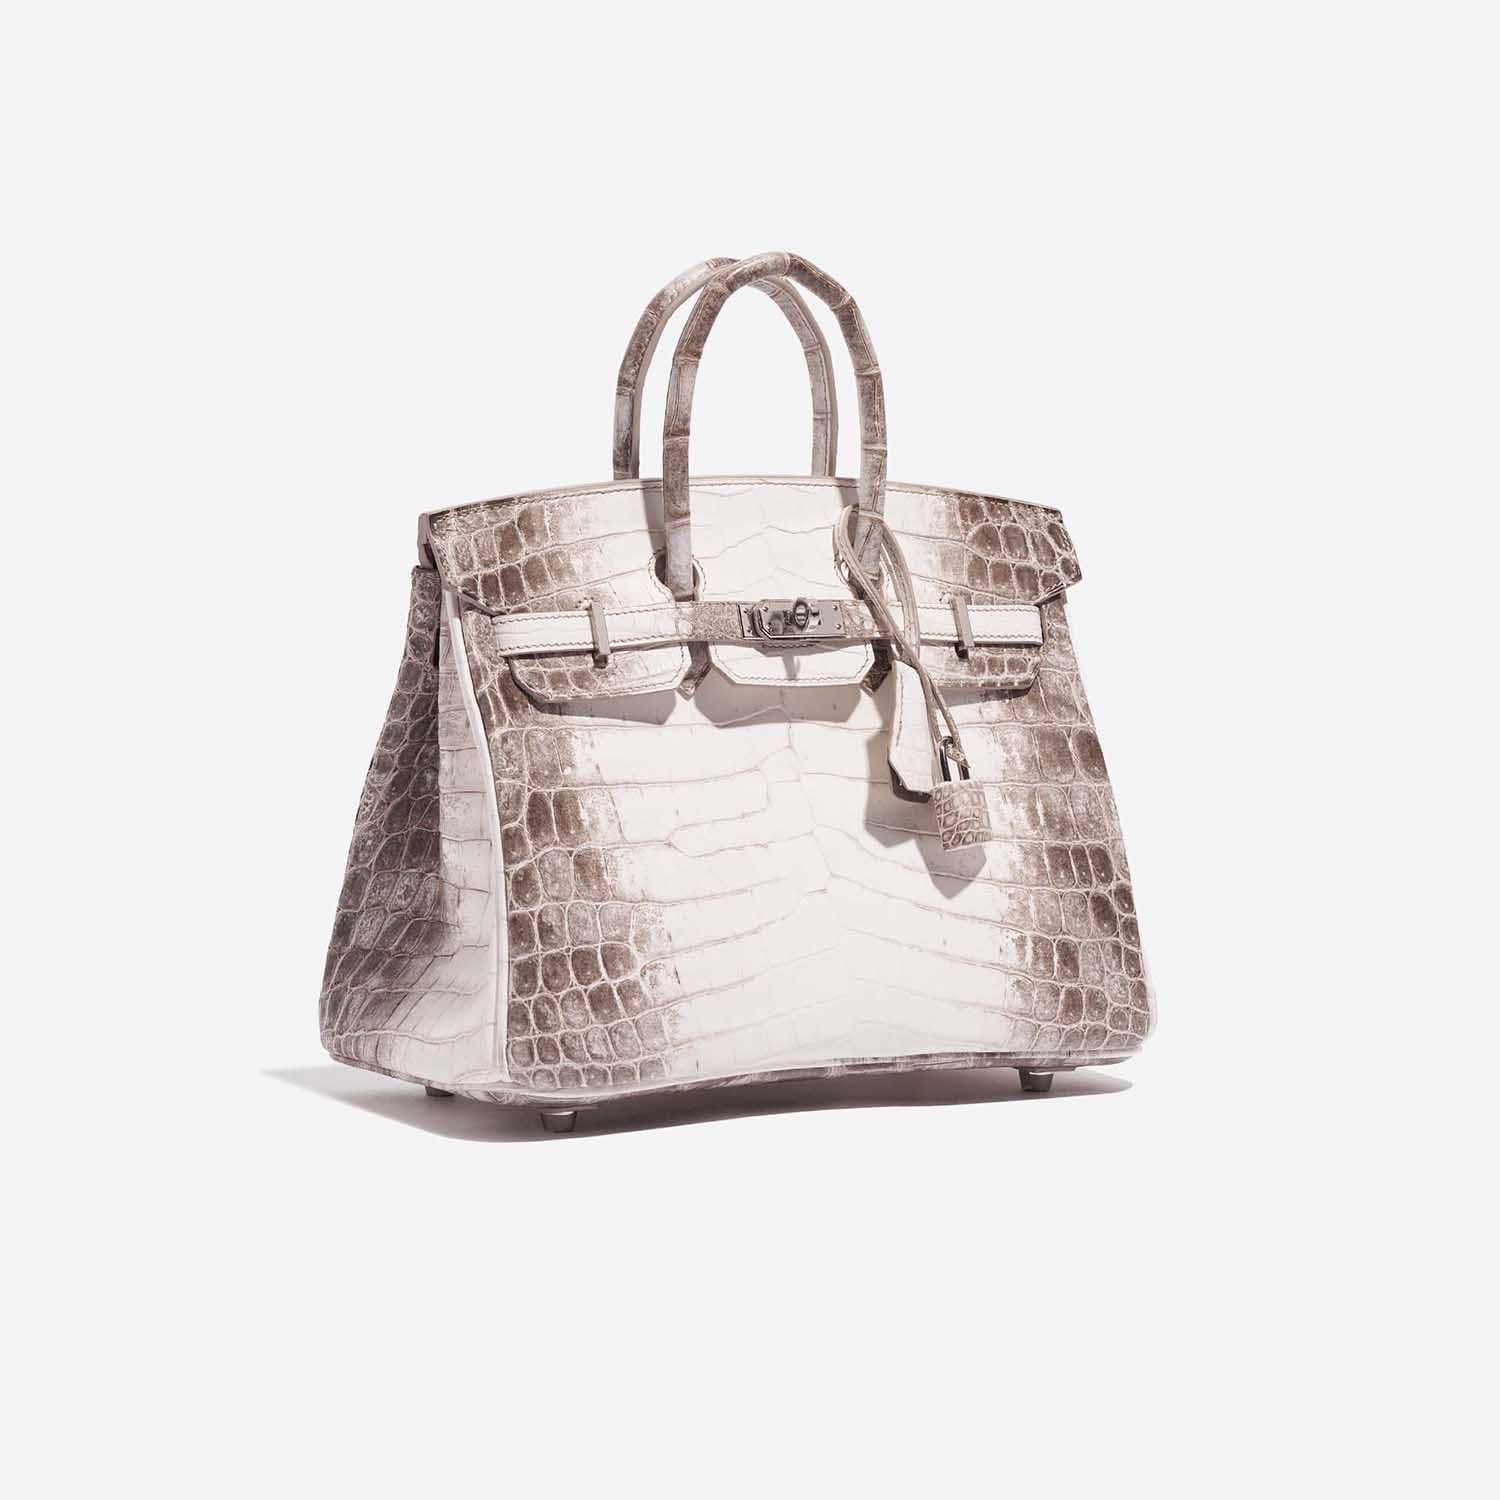 Pre-owned Hermès Tasche Birkin 25 Niloticus Crocodile Himalaya Blanc Brown, White Side Front | Verkaufen Sie Ihre Designer-Tasche auf Saclab.com